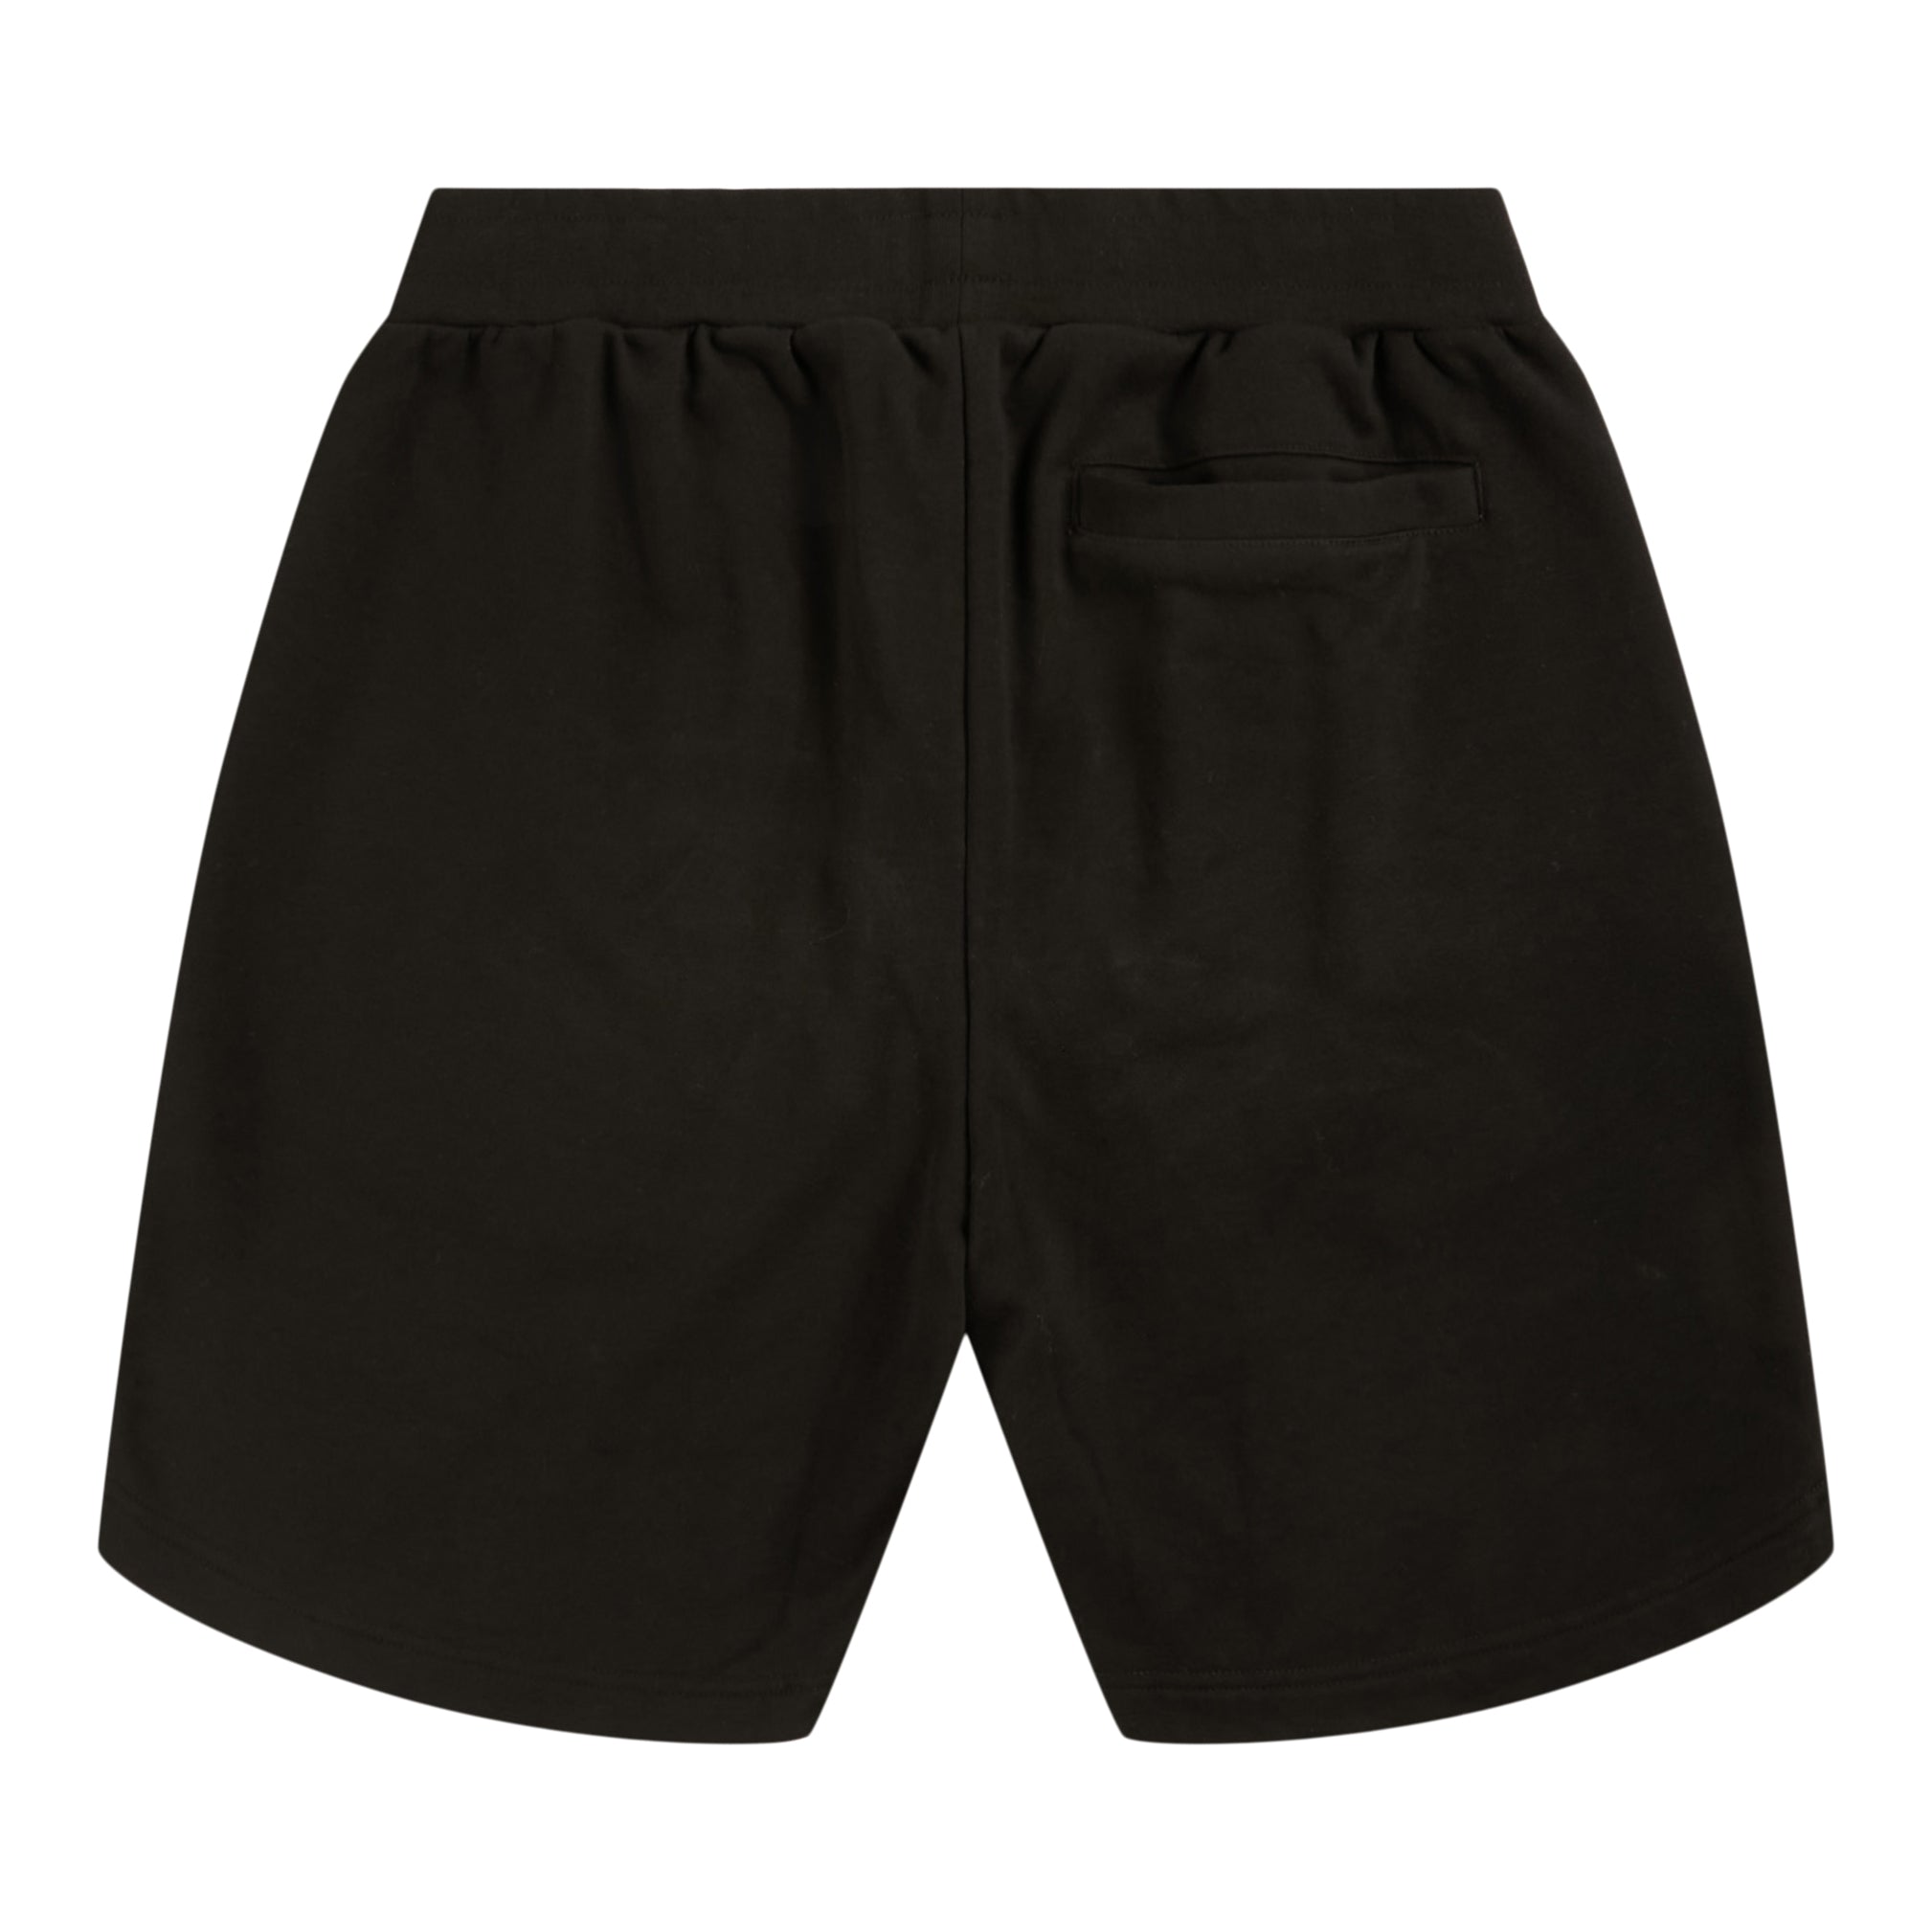 Crooks Basic Polo Shorts